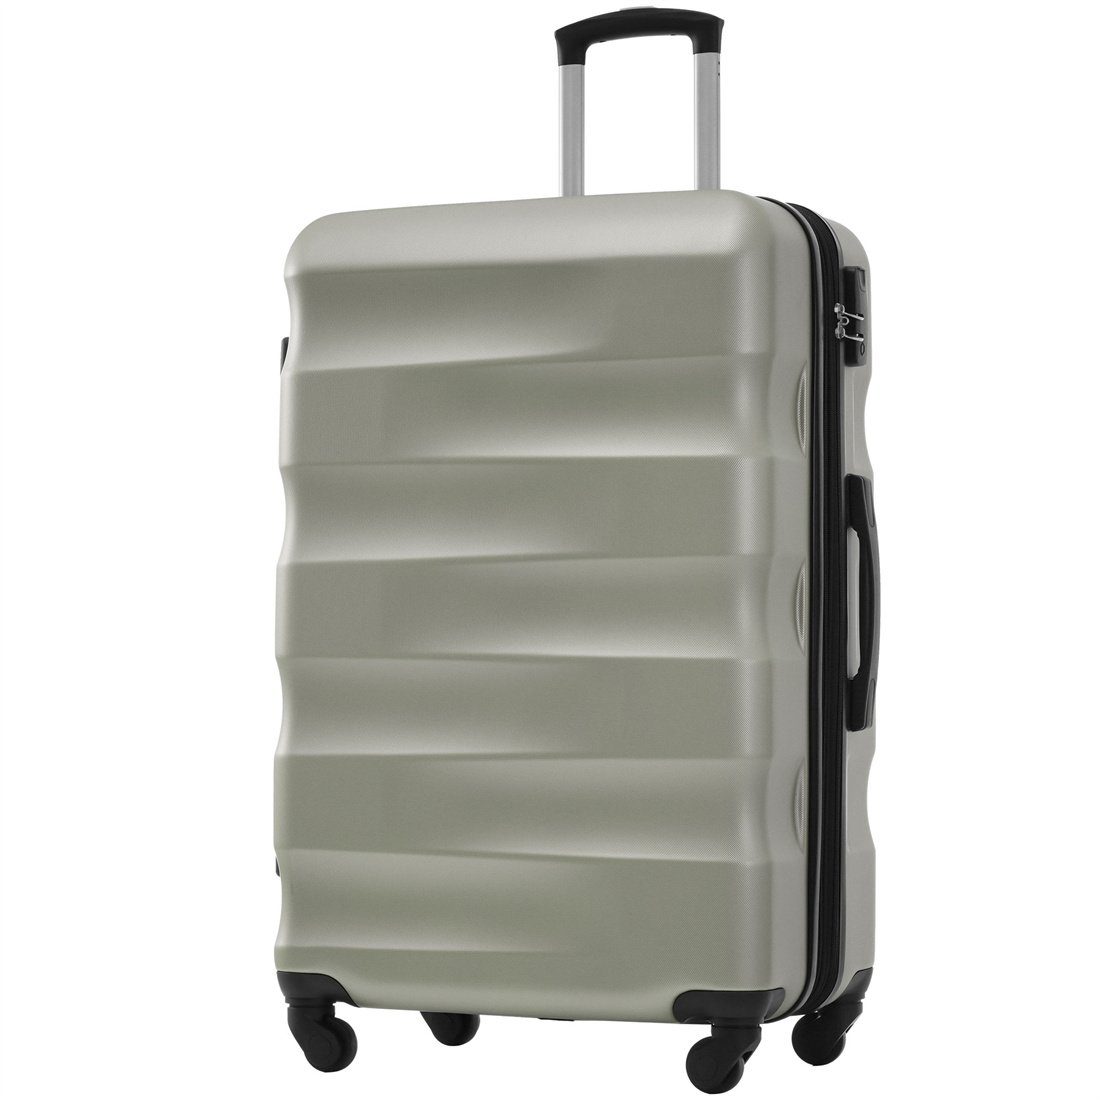 Koffer DÖRÖY Reisekoffer, Hartschalen-Koffer, 69*44.5*26.5cm, Goldgrün ABS-Material